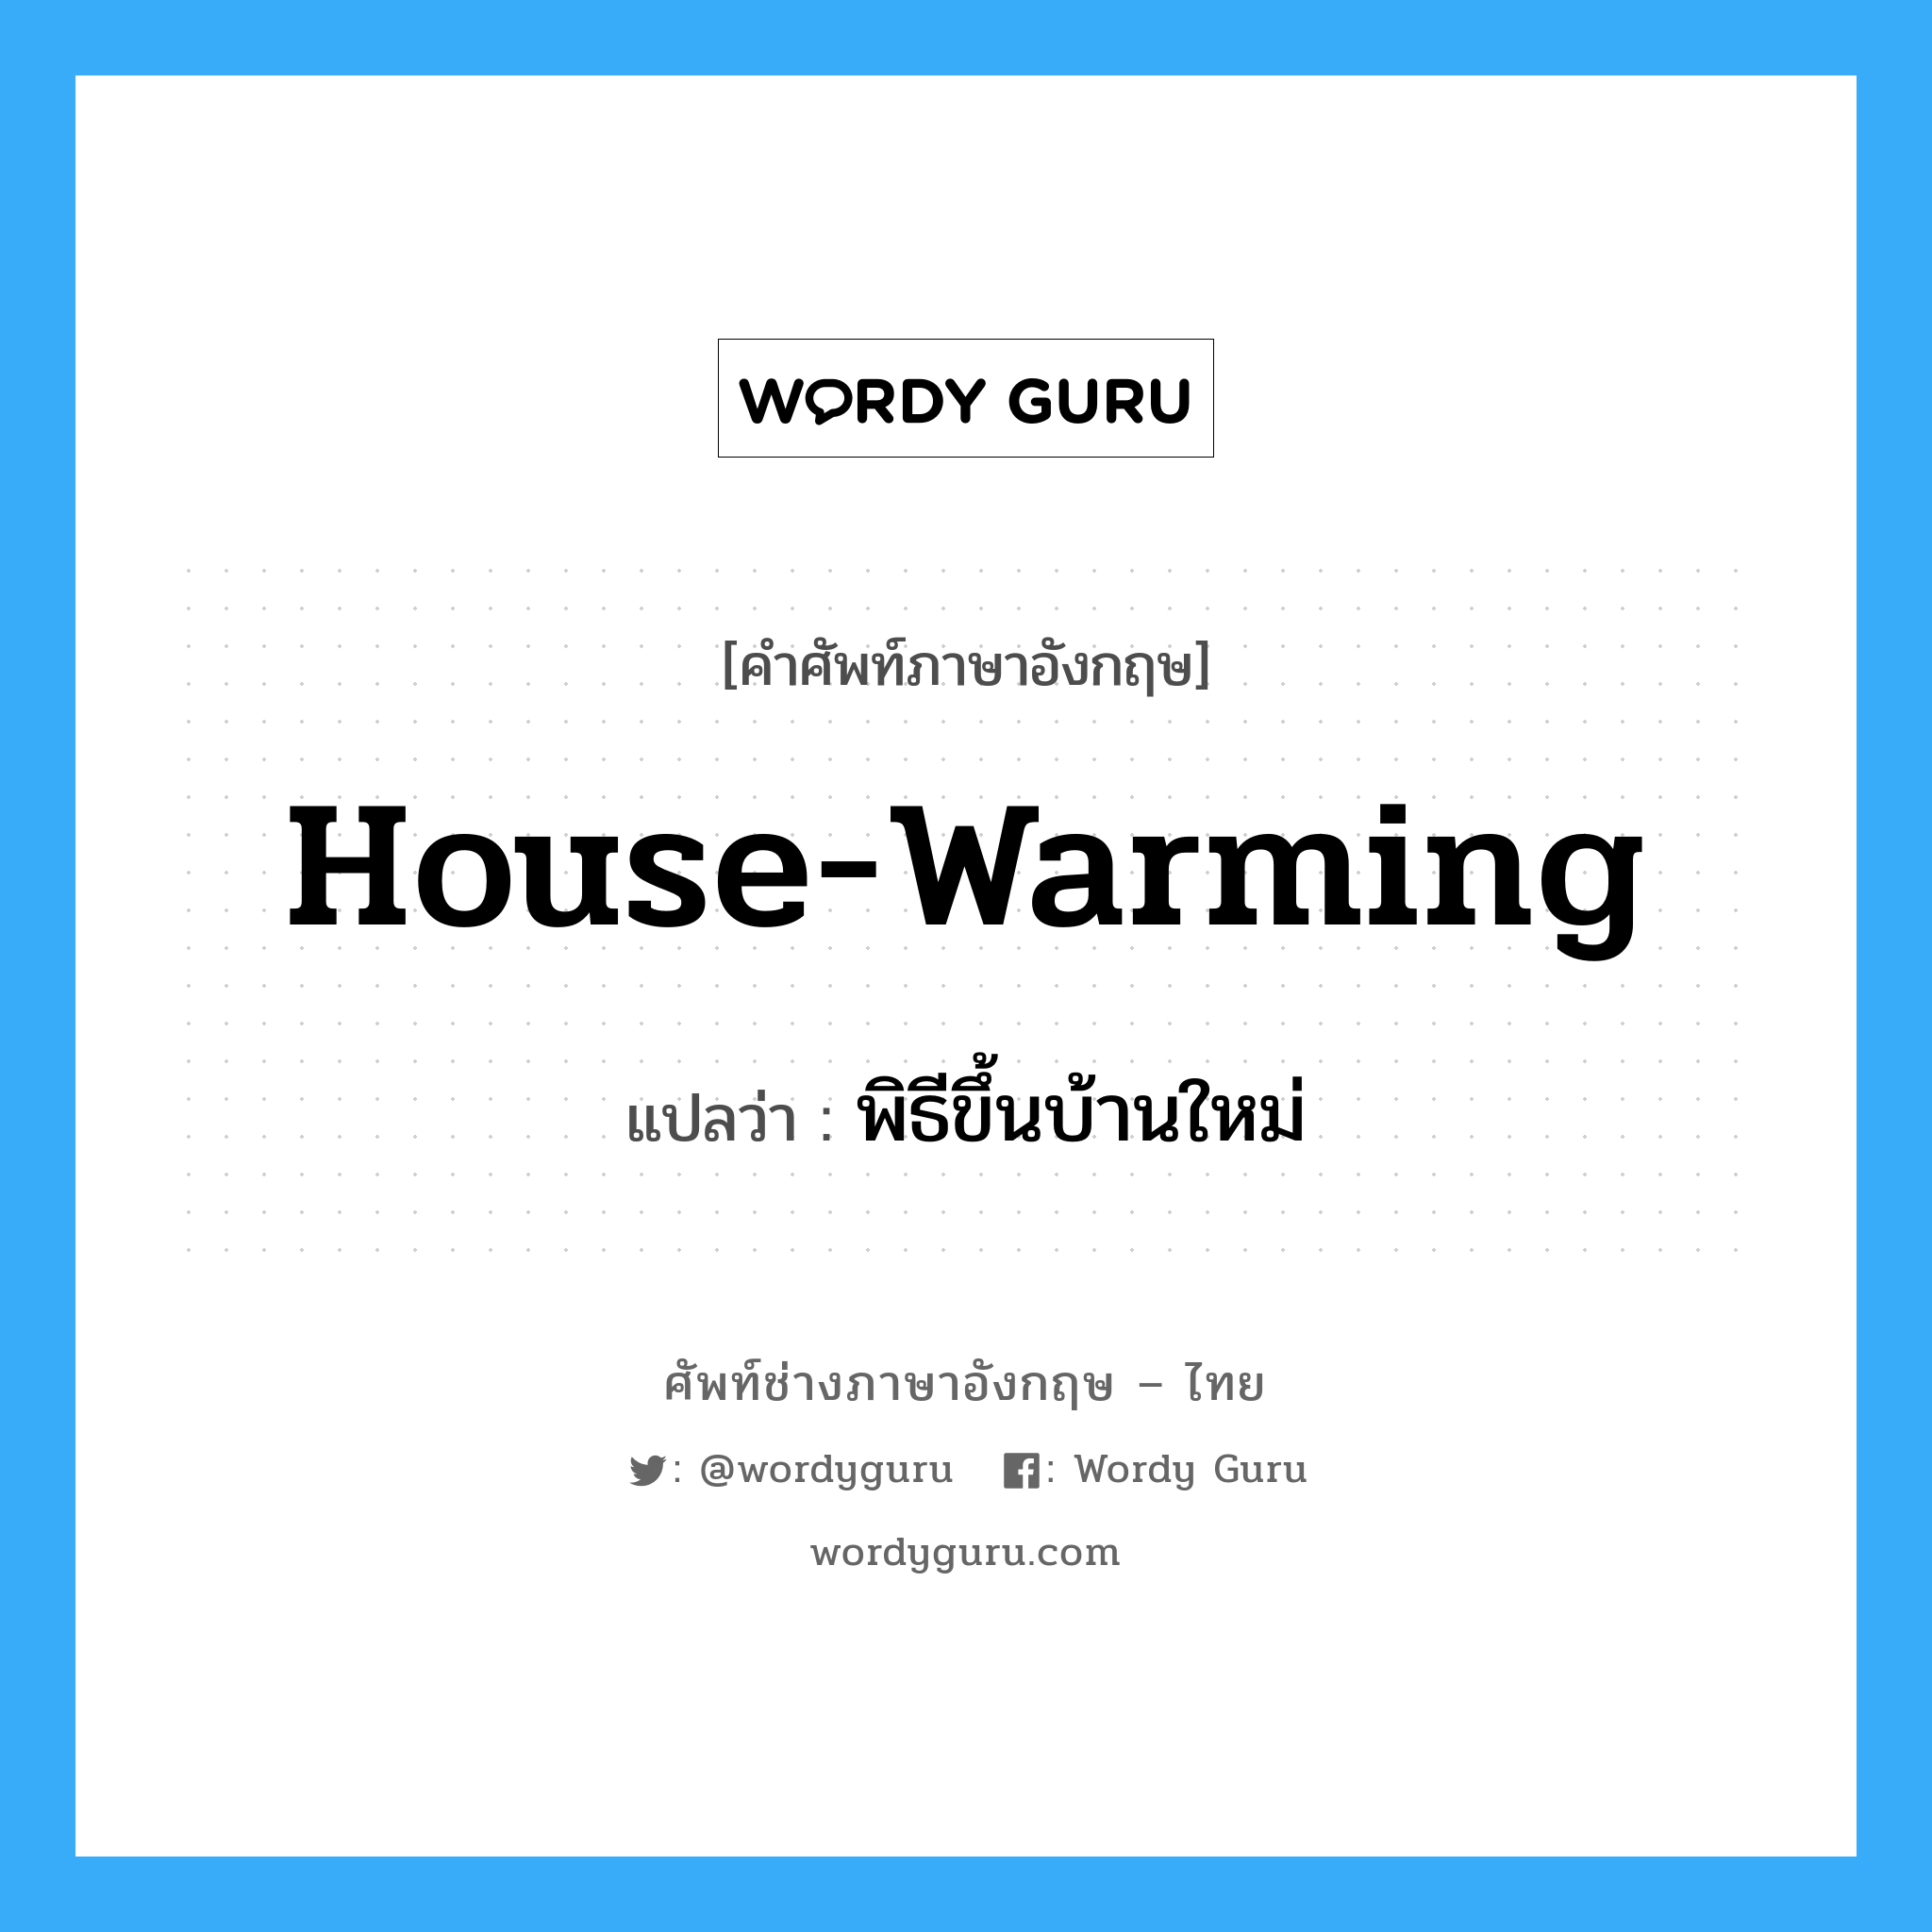 พิธีขึ้นบ้านใหม่ ภาษาอังกฤษ?, คำศัพท์ช่างภาษาอังกฤษ - ไทย พิธีขึ้นบ้านใหม่ คำศัพท์ภาษาอังกฤษ พิธีขึ้นบ้านใหม่ แปลว่า house-warming